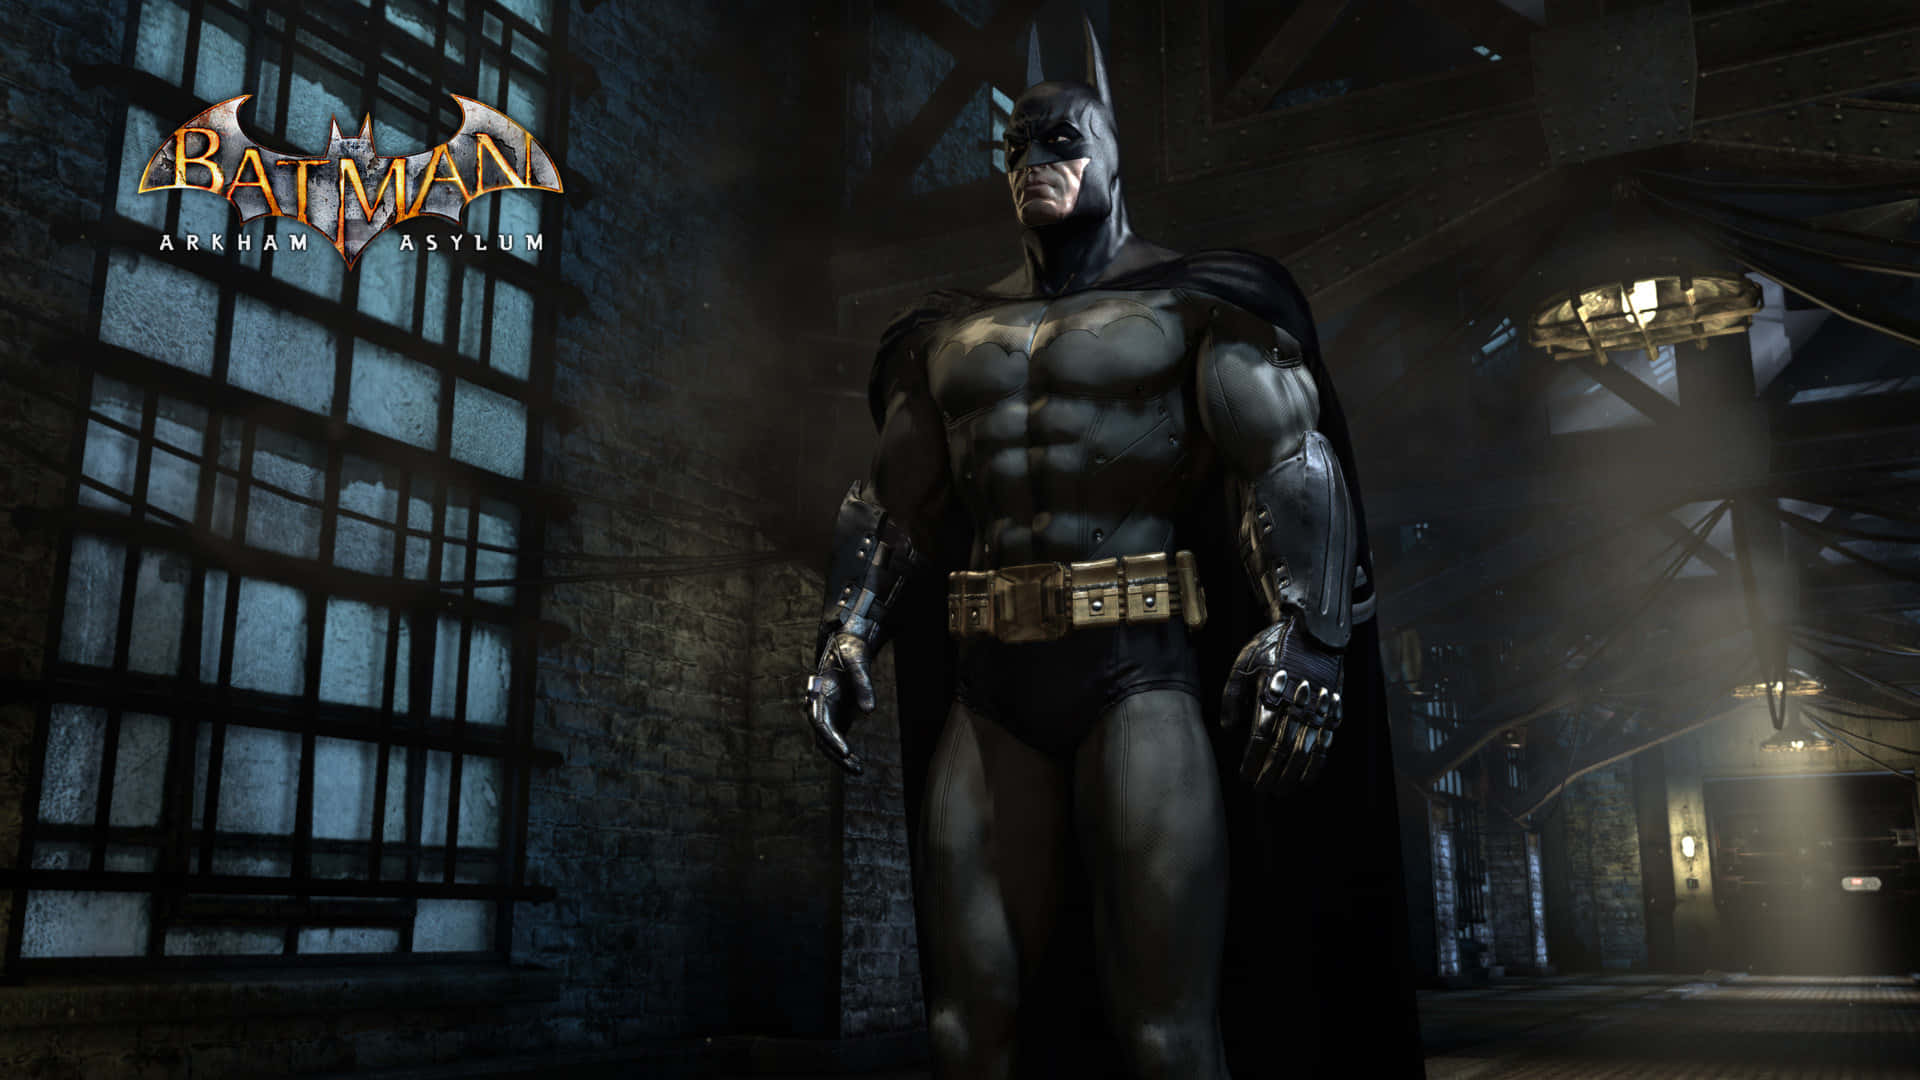 Uppmanaralla Superhjältar! Kom Och Utrusta Dig Själv För Att Rädda Gotham City Från Arkham Asylum. Wallpaper